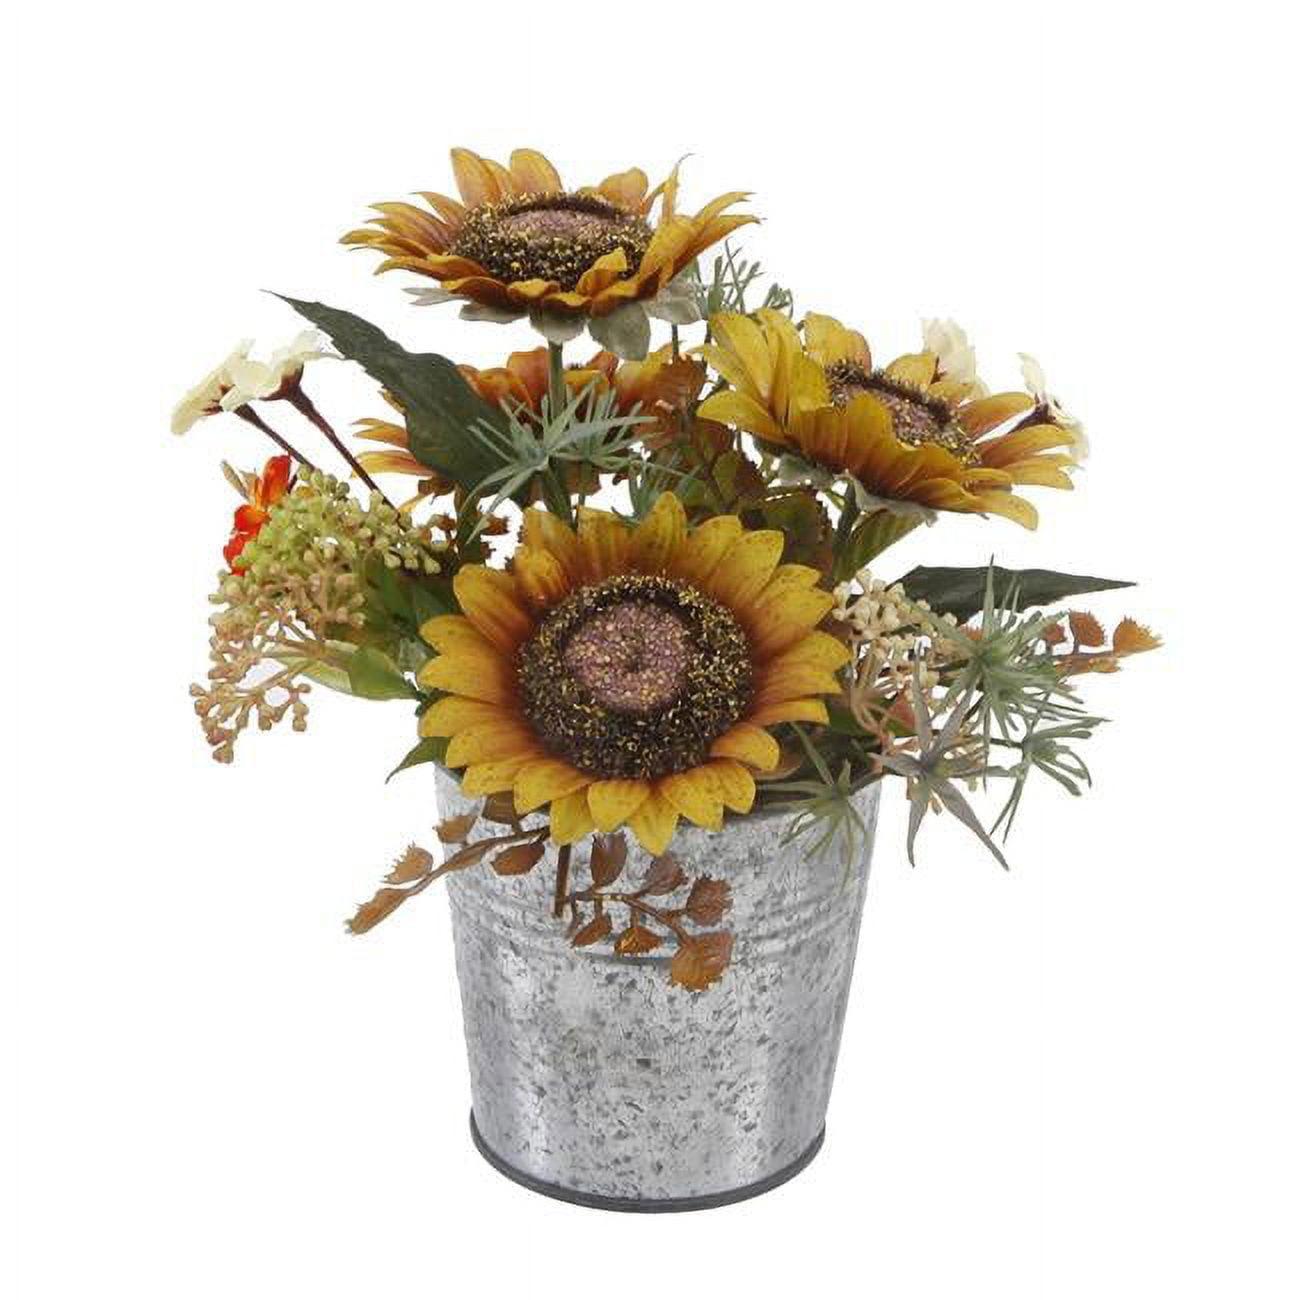 Autumn Harvest Sunflower Mix in Farmhouse Galvanized Tin